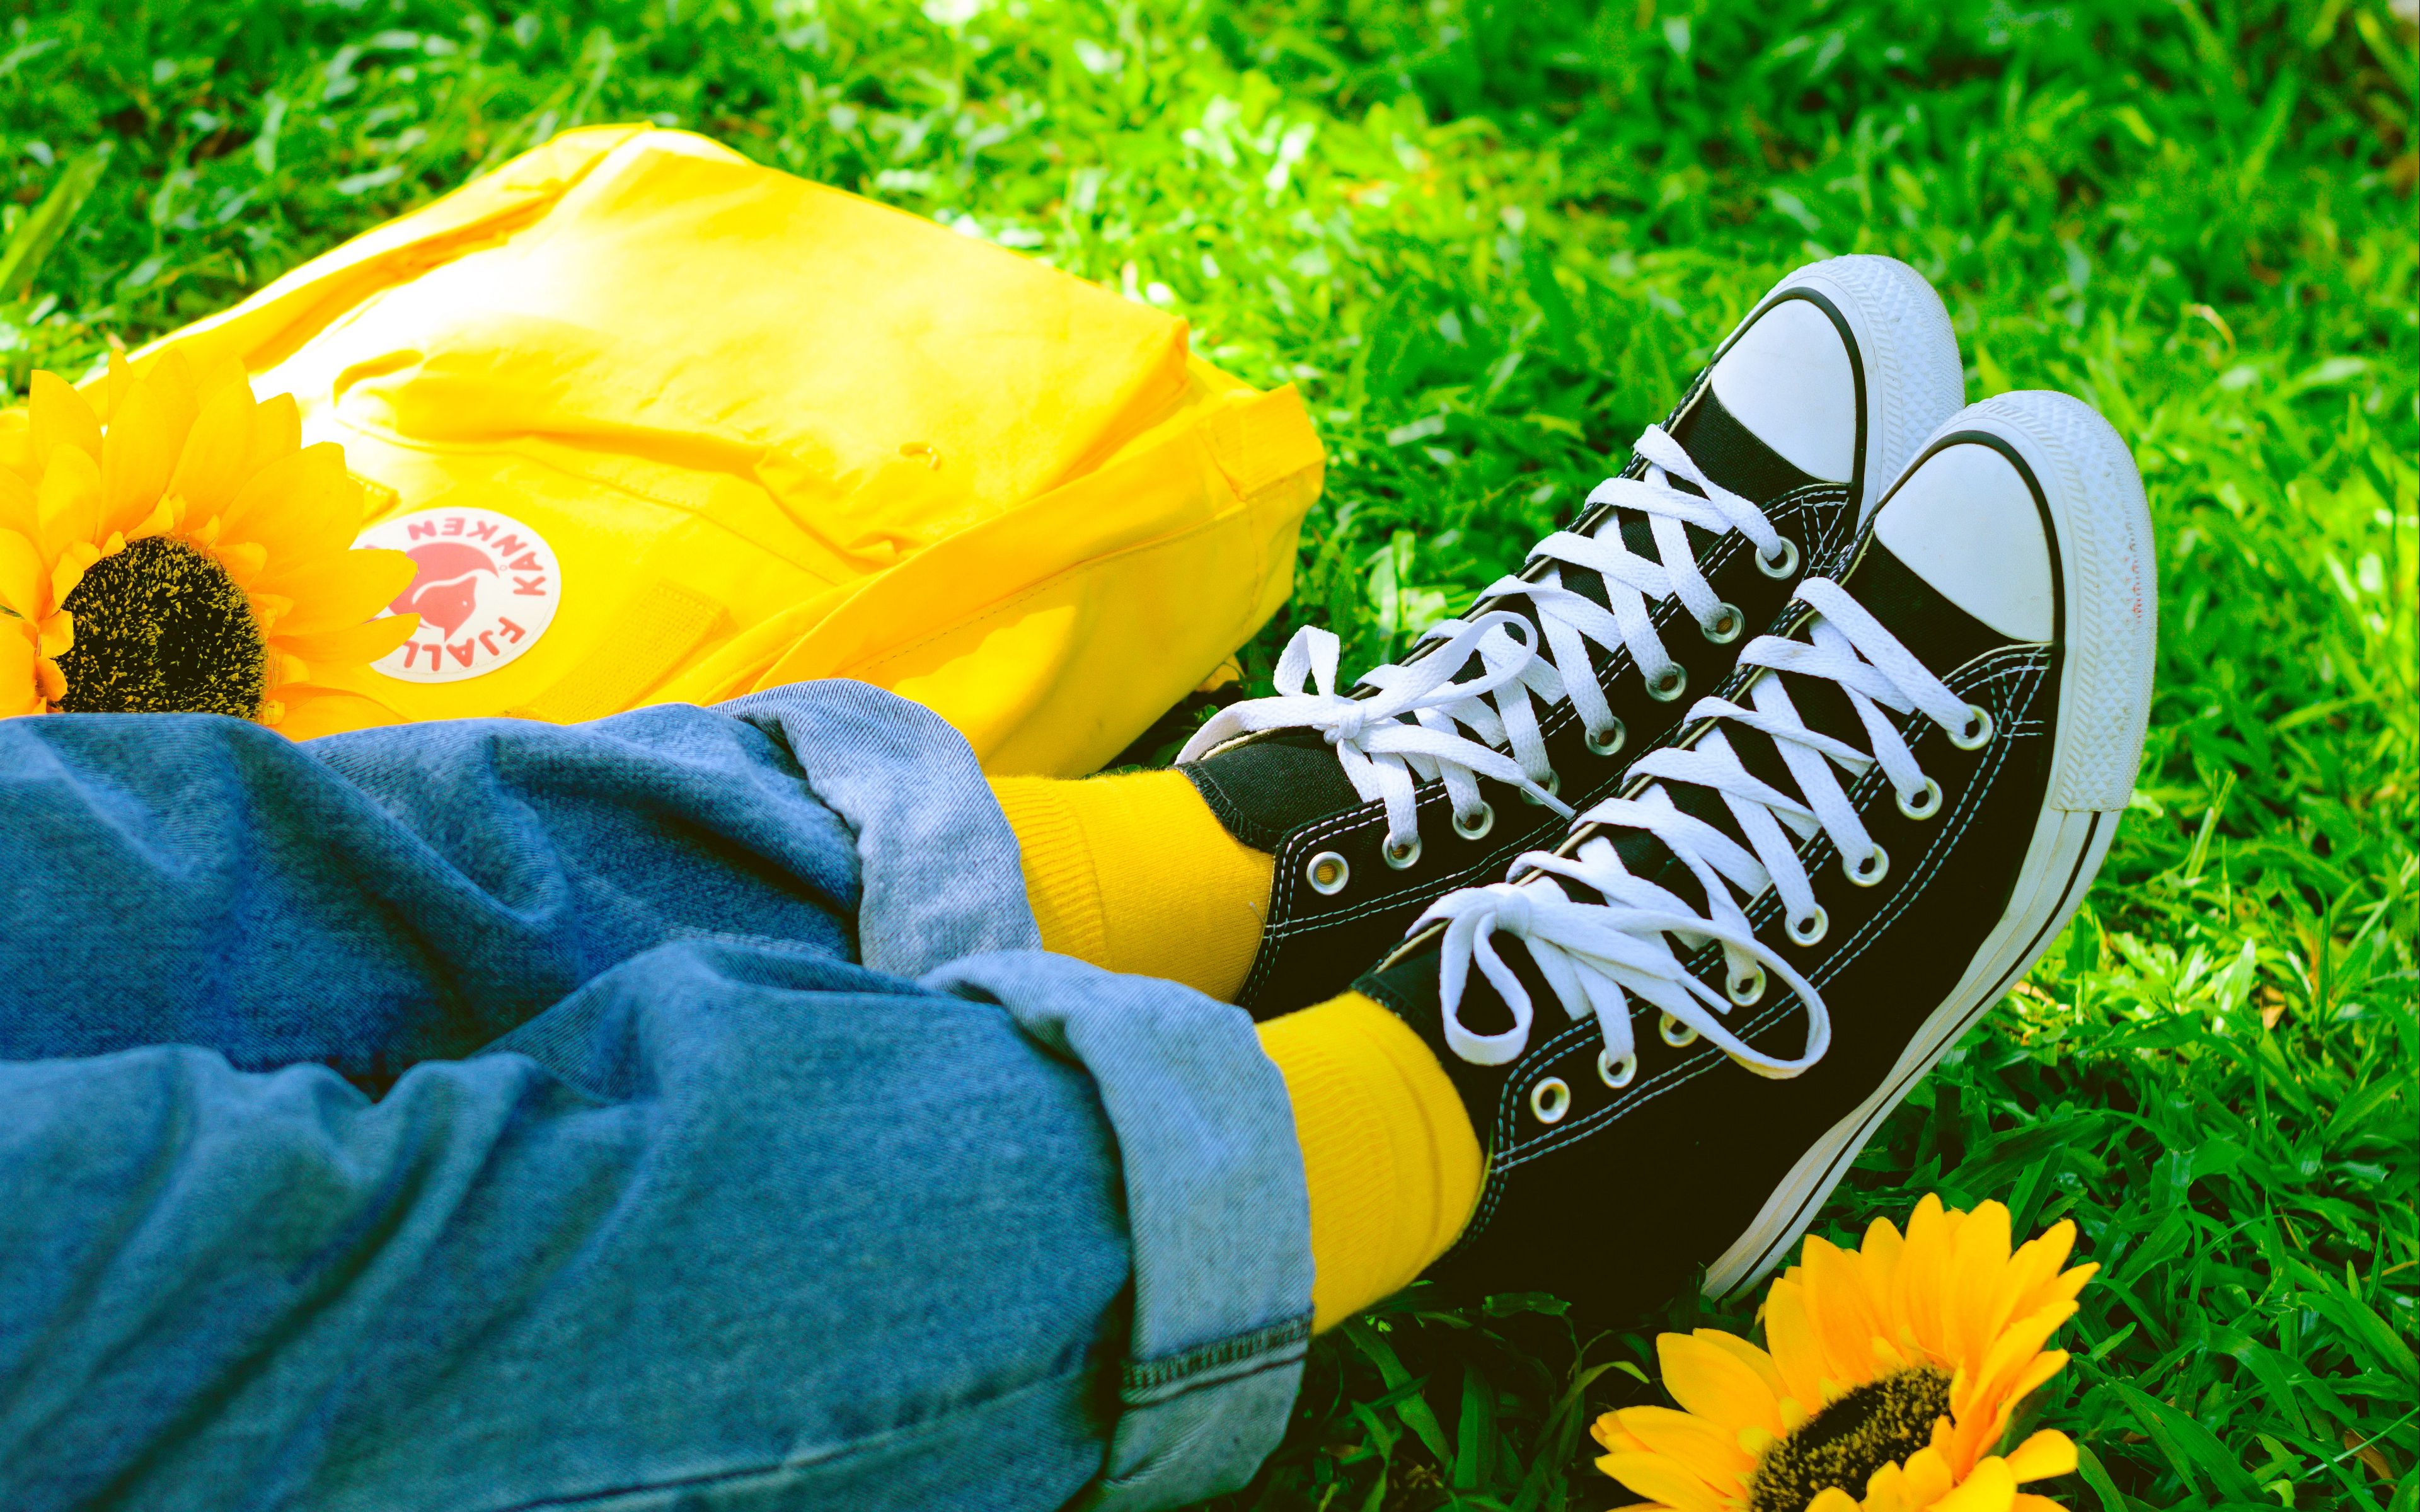 Цветы в носках и кроссовках